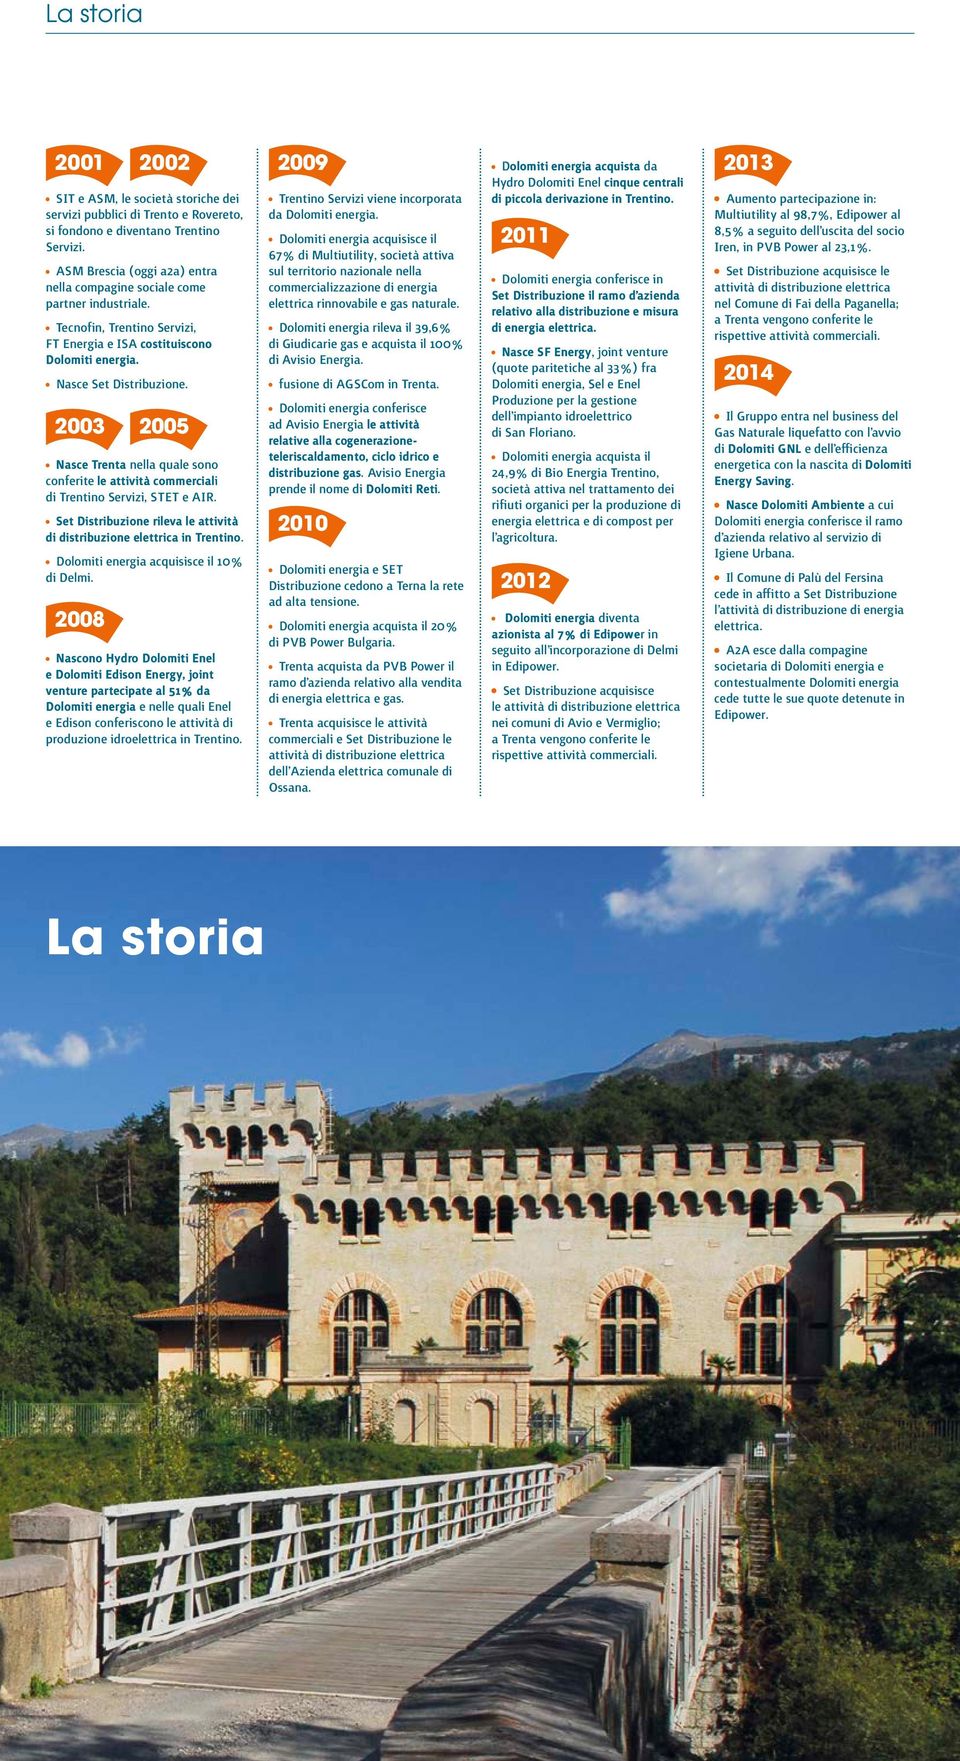 2003 2005 Nasce Trenta nella quale sono conferite le attività commerciali di Trentino Servizi, STET e AIR. Set Distribuzione rileva le attività di distribuzione elettrica in Trentino.